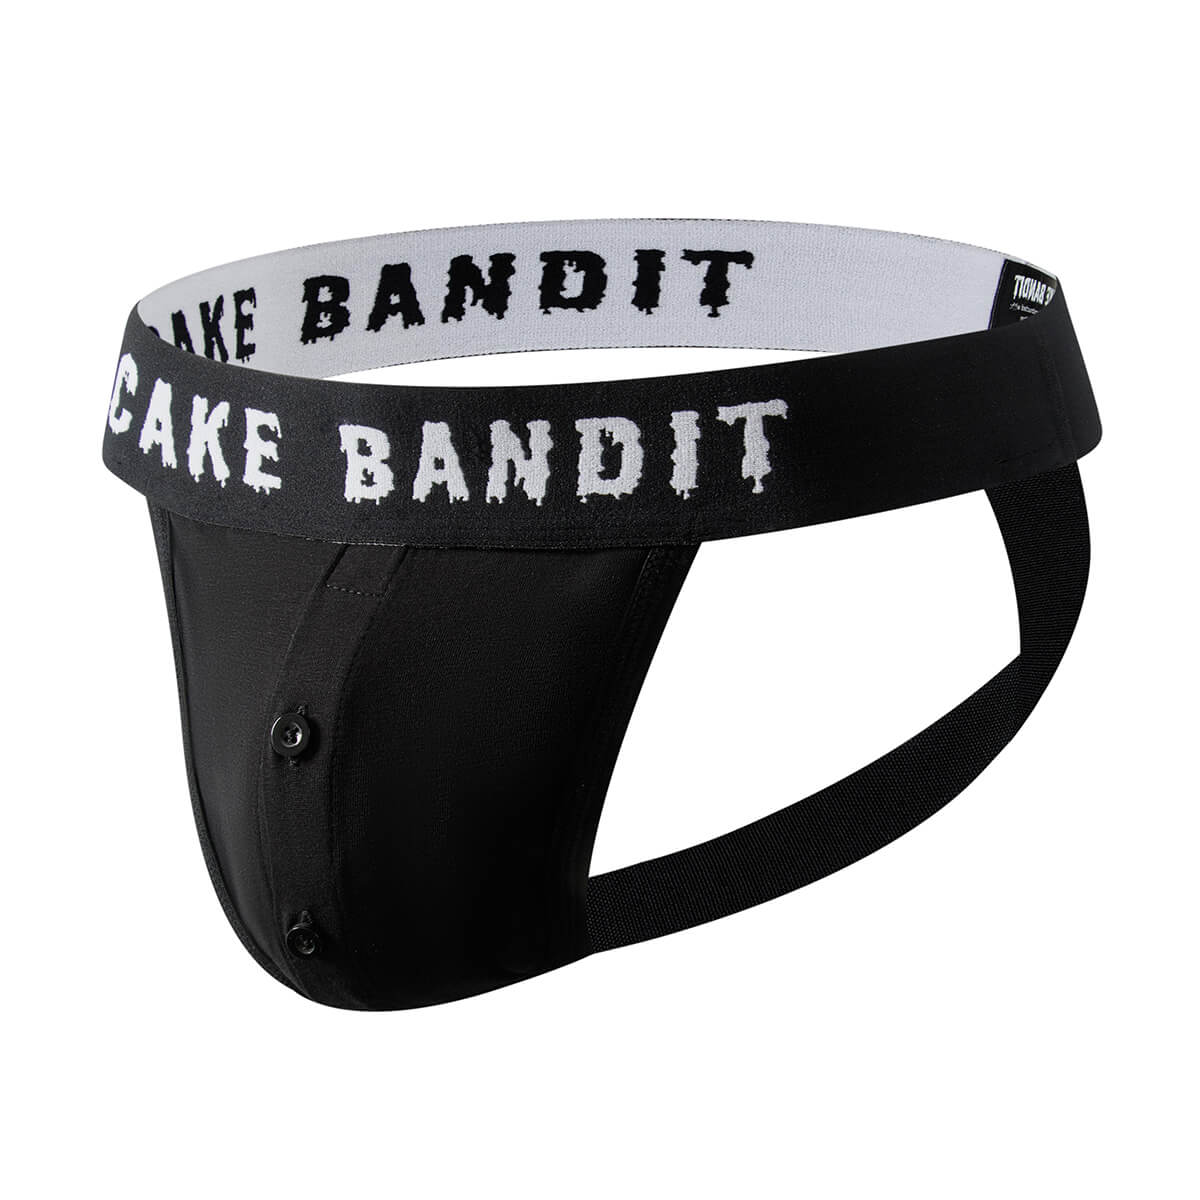 Cake Bandit - STP Jock Strap – TG Supply